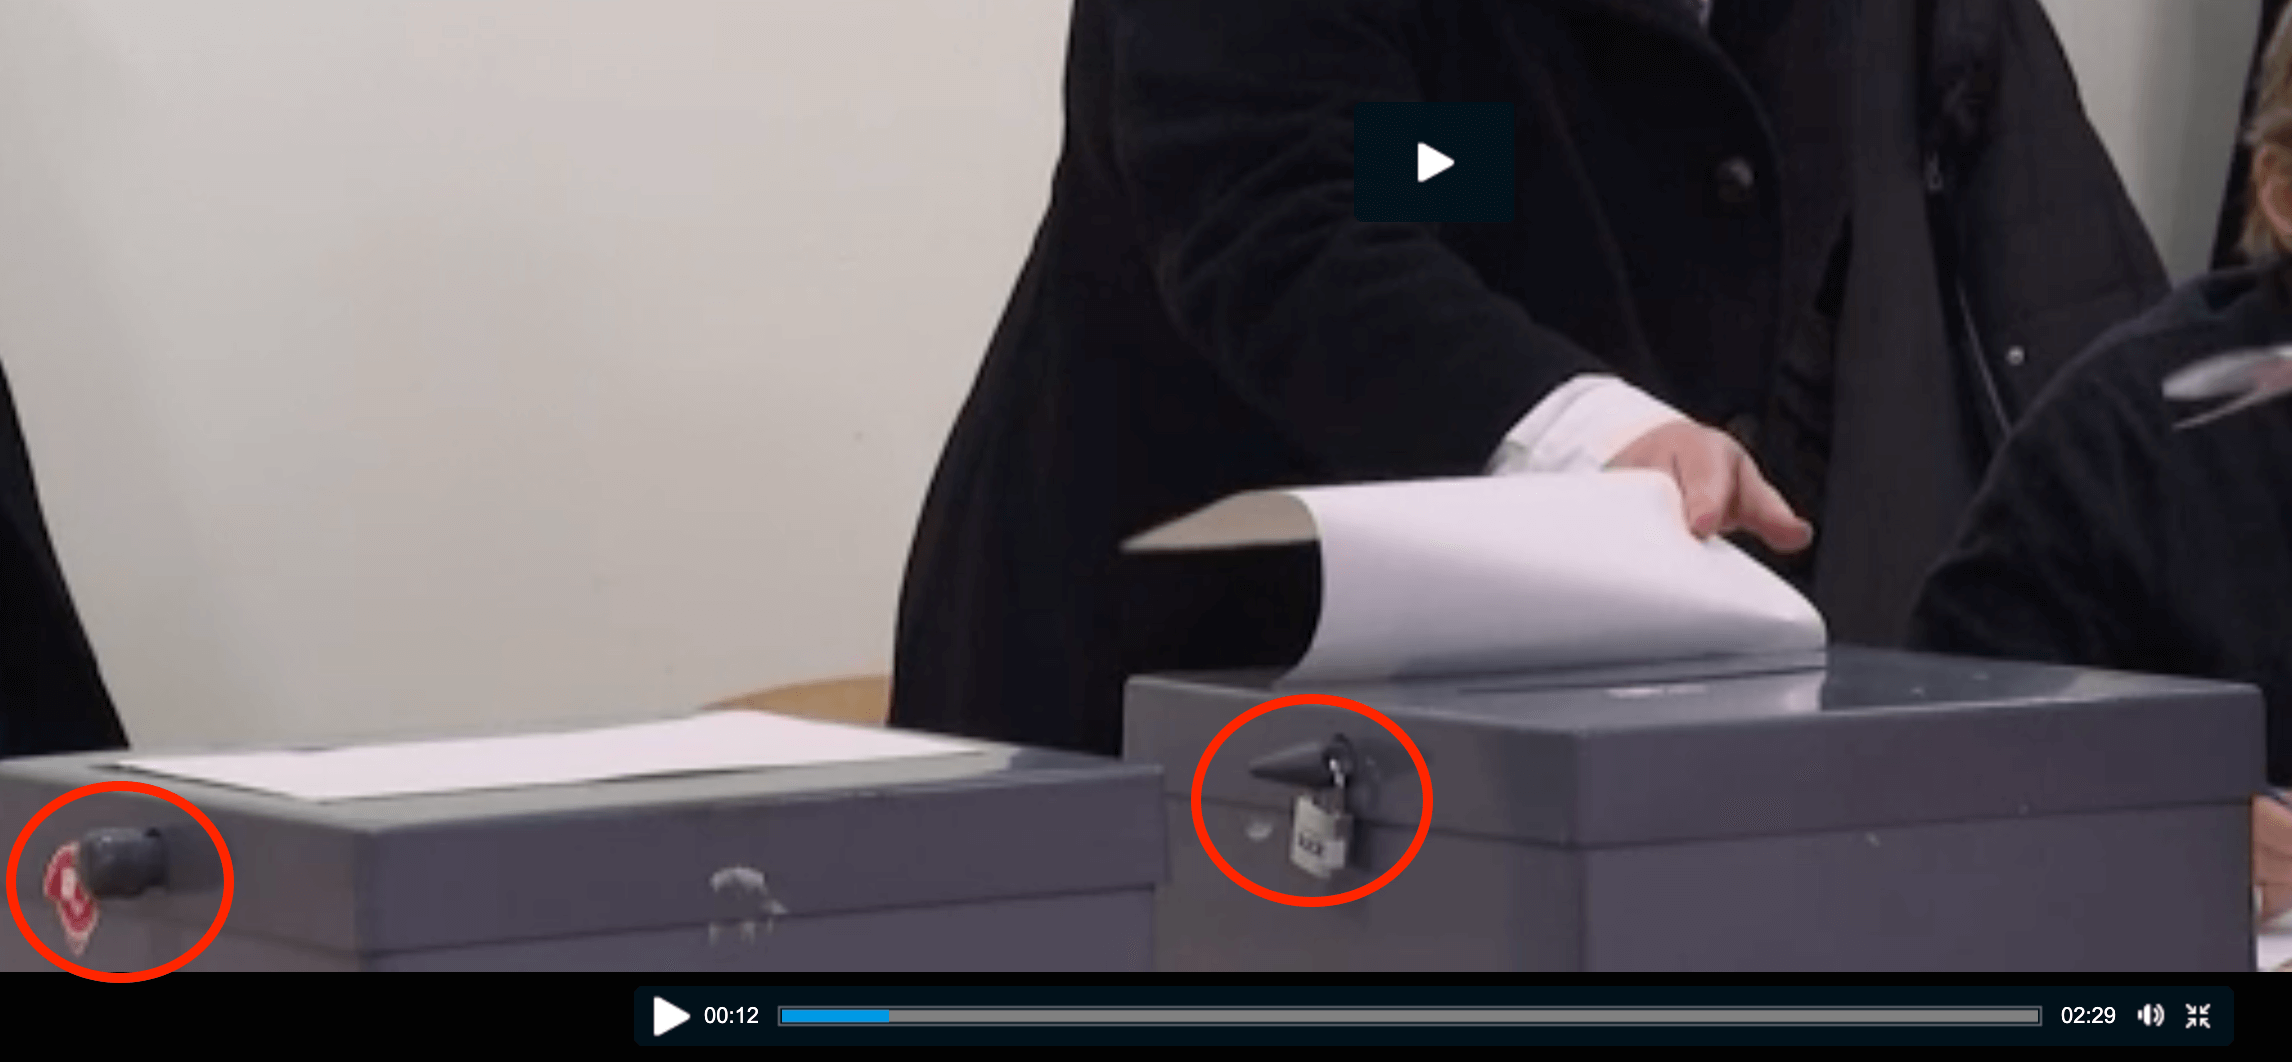 Eine weitere Aufnahme von APTN zeigt den Verschlussmechanismus der Wahlurne von beiden Seiten